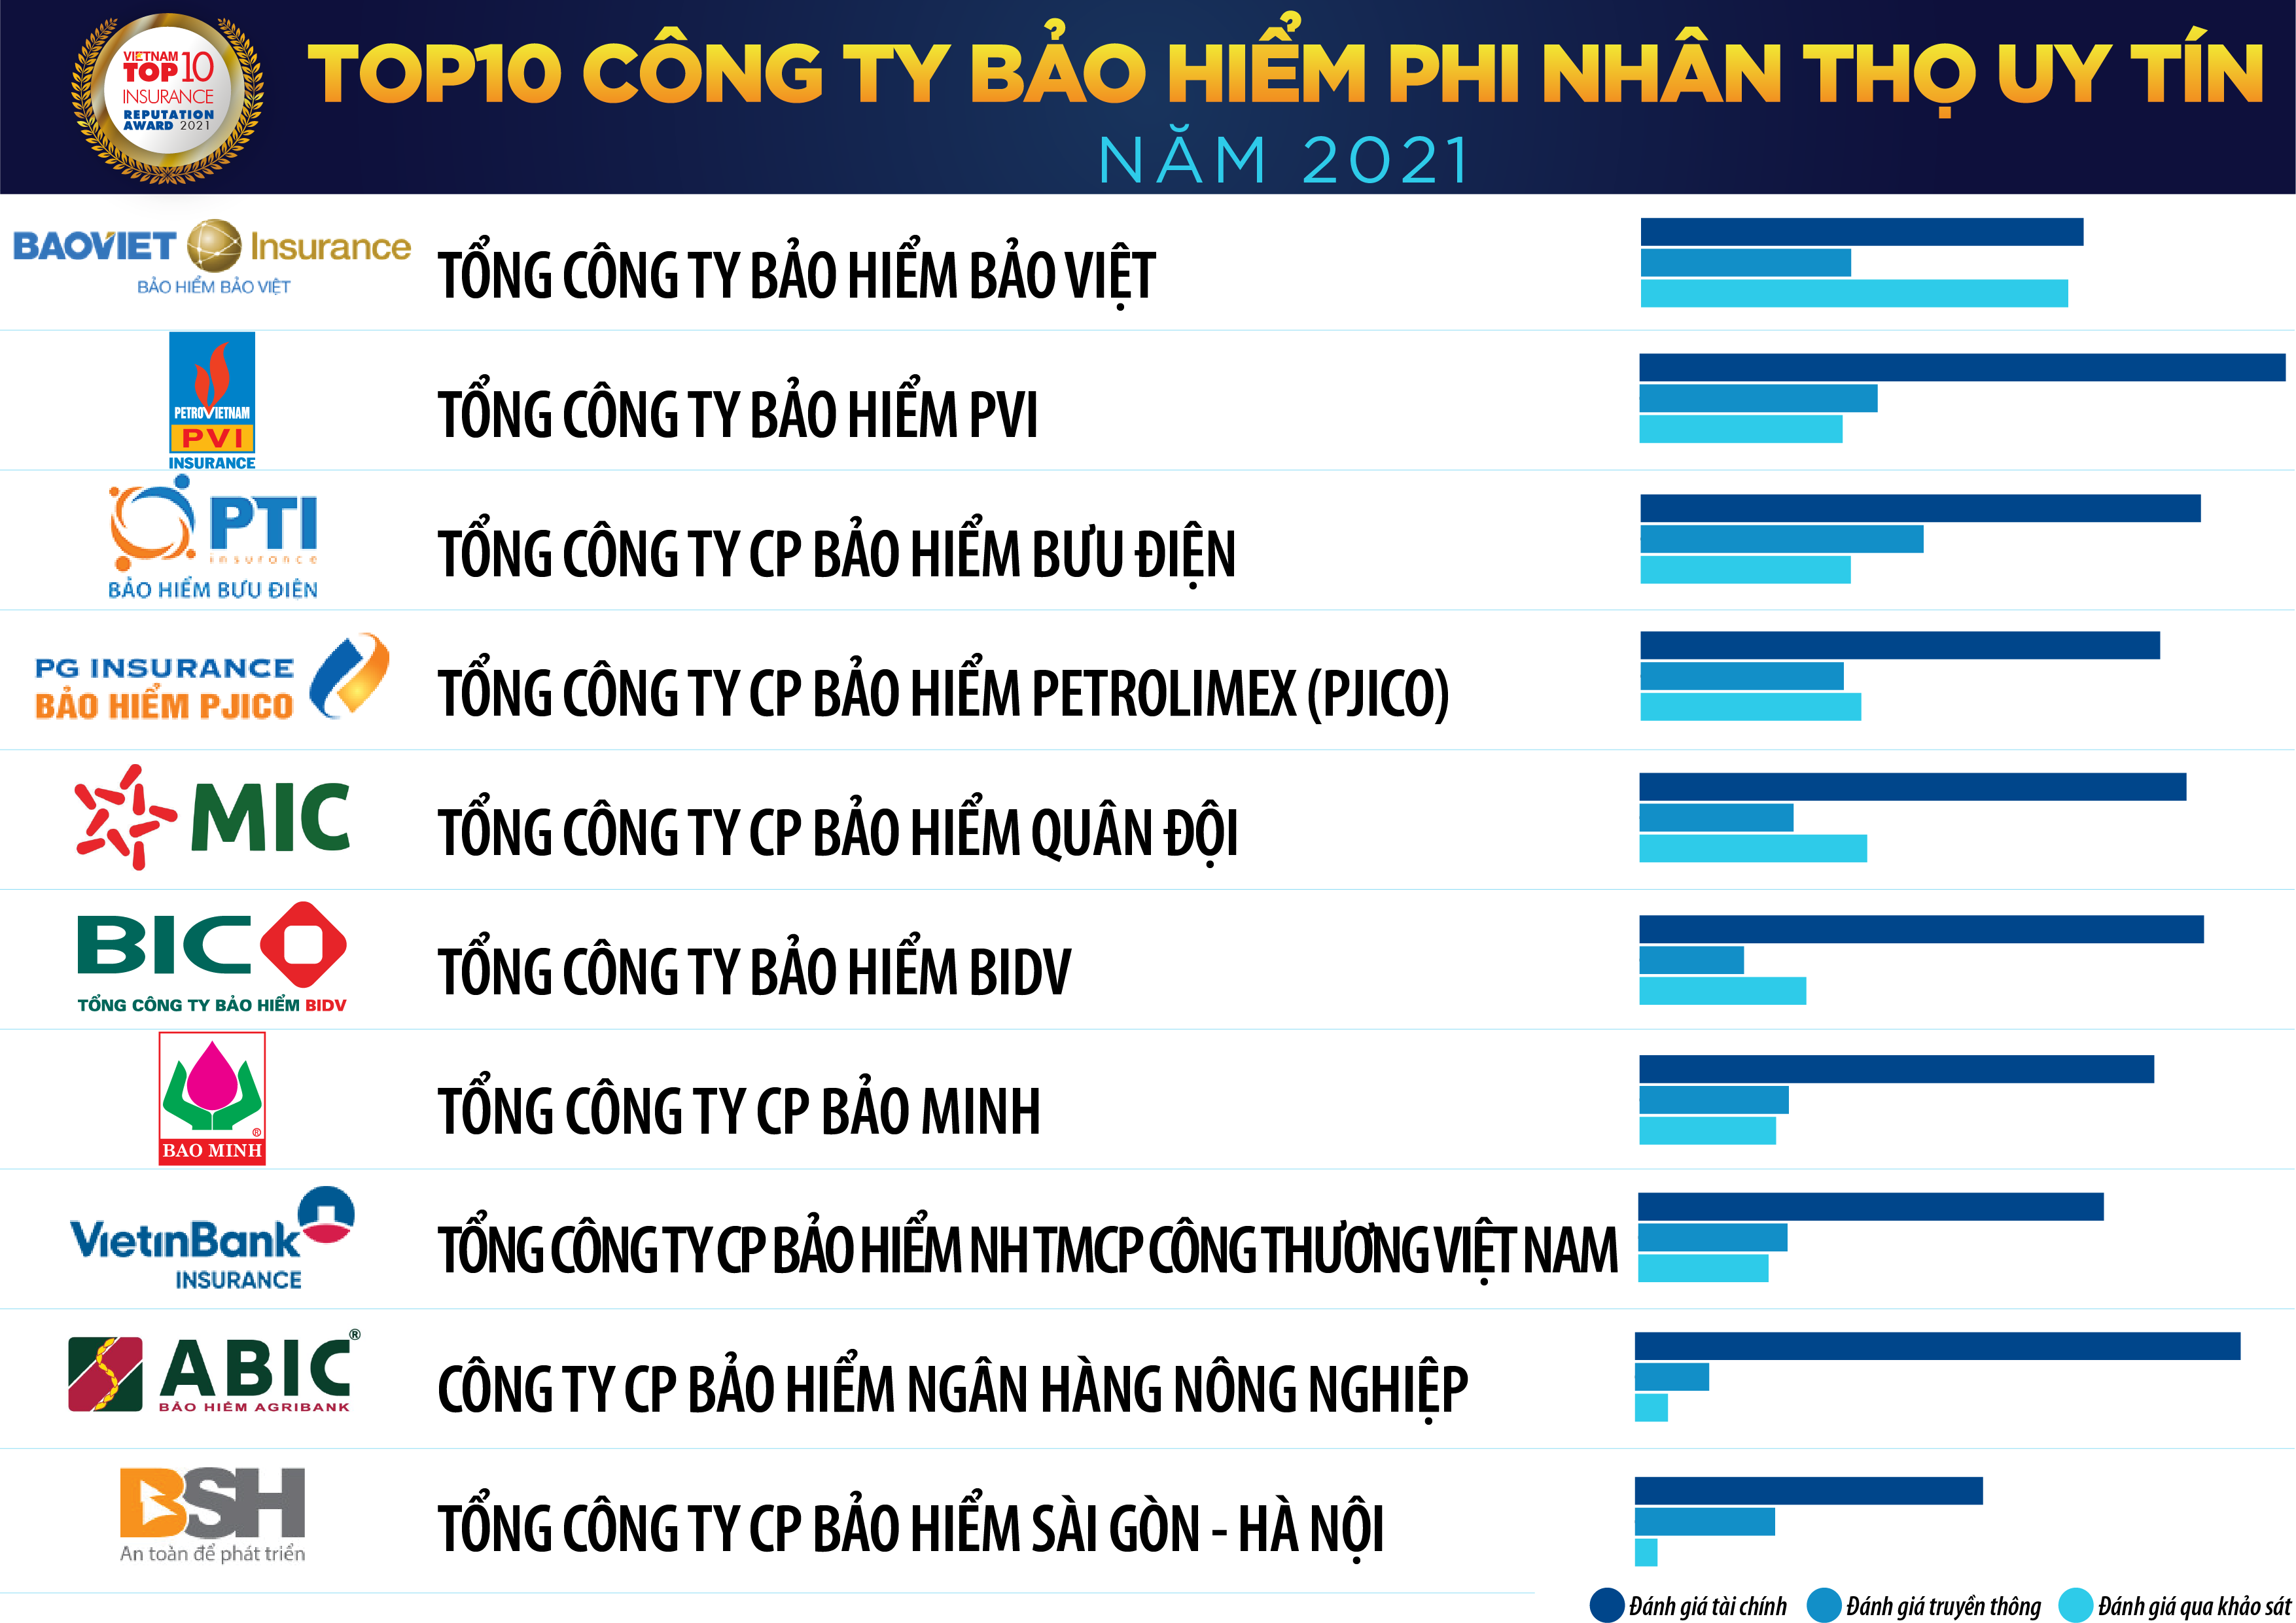 BẢO HIỂM MIC NẰM TRONG TOP 5 VINH DANH DOANH NGHIỆP BẢO HIỂM PHI NHÂN THỌ UY TÍN 2021